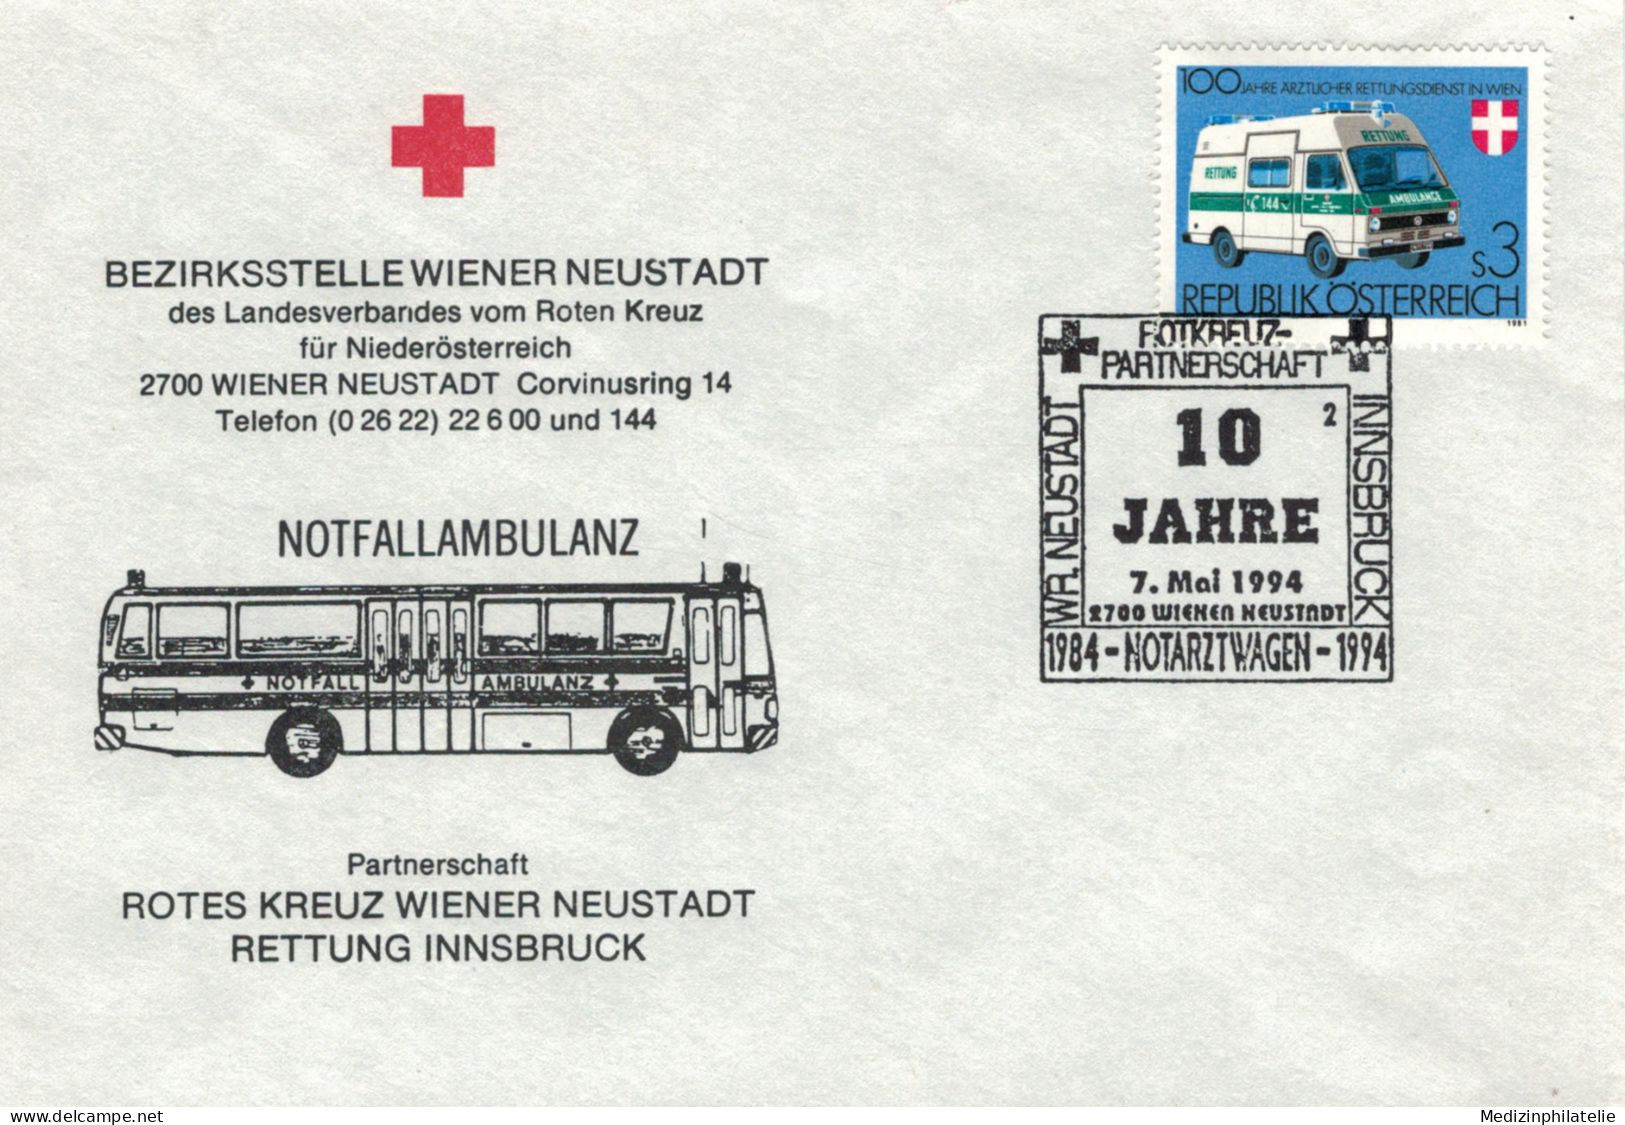 Rotes Kreuz - 2700 Wiener Neustadt 1994 Notarztwagen - First Aid